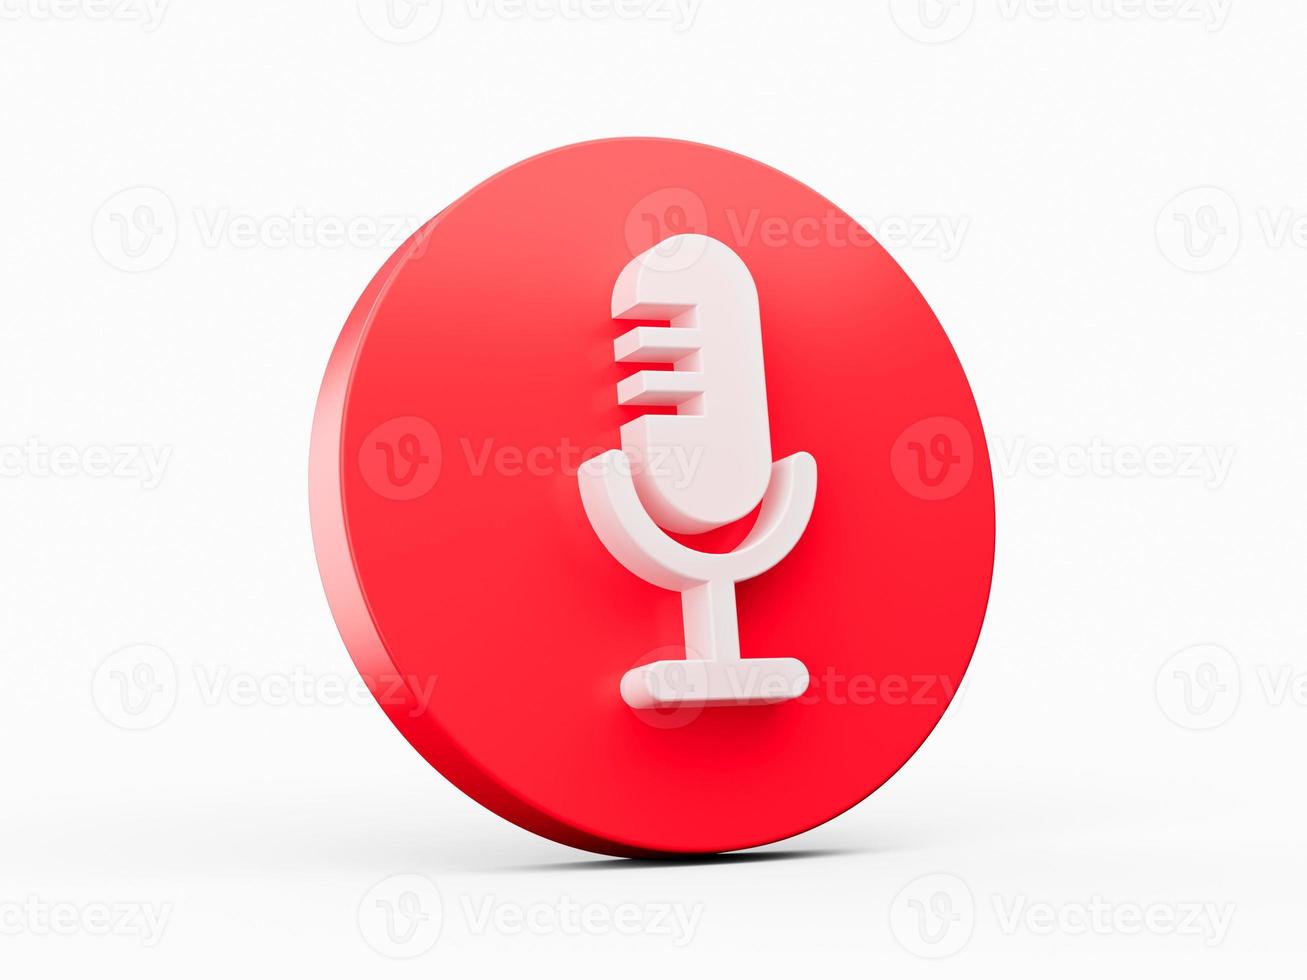 microfone de design de logotipo de podcast ou rádio no ícone vermelho ilustração 3d foto